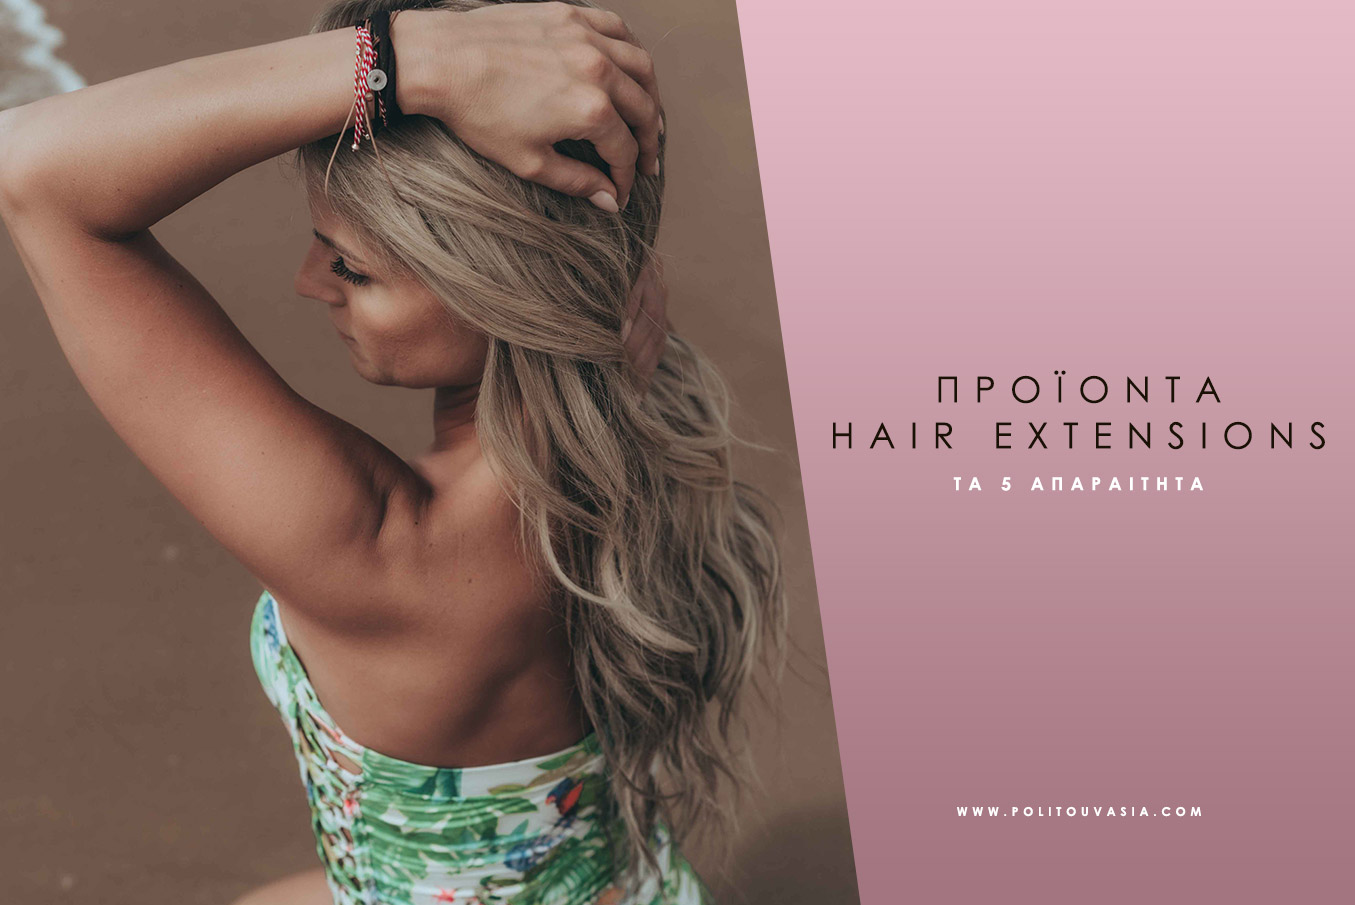 Προϊόντα hair extensions Natural hair extensions best extensions athens greece politou vasia